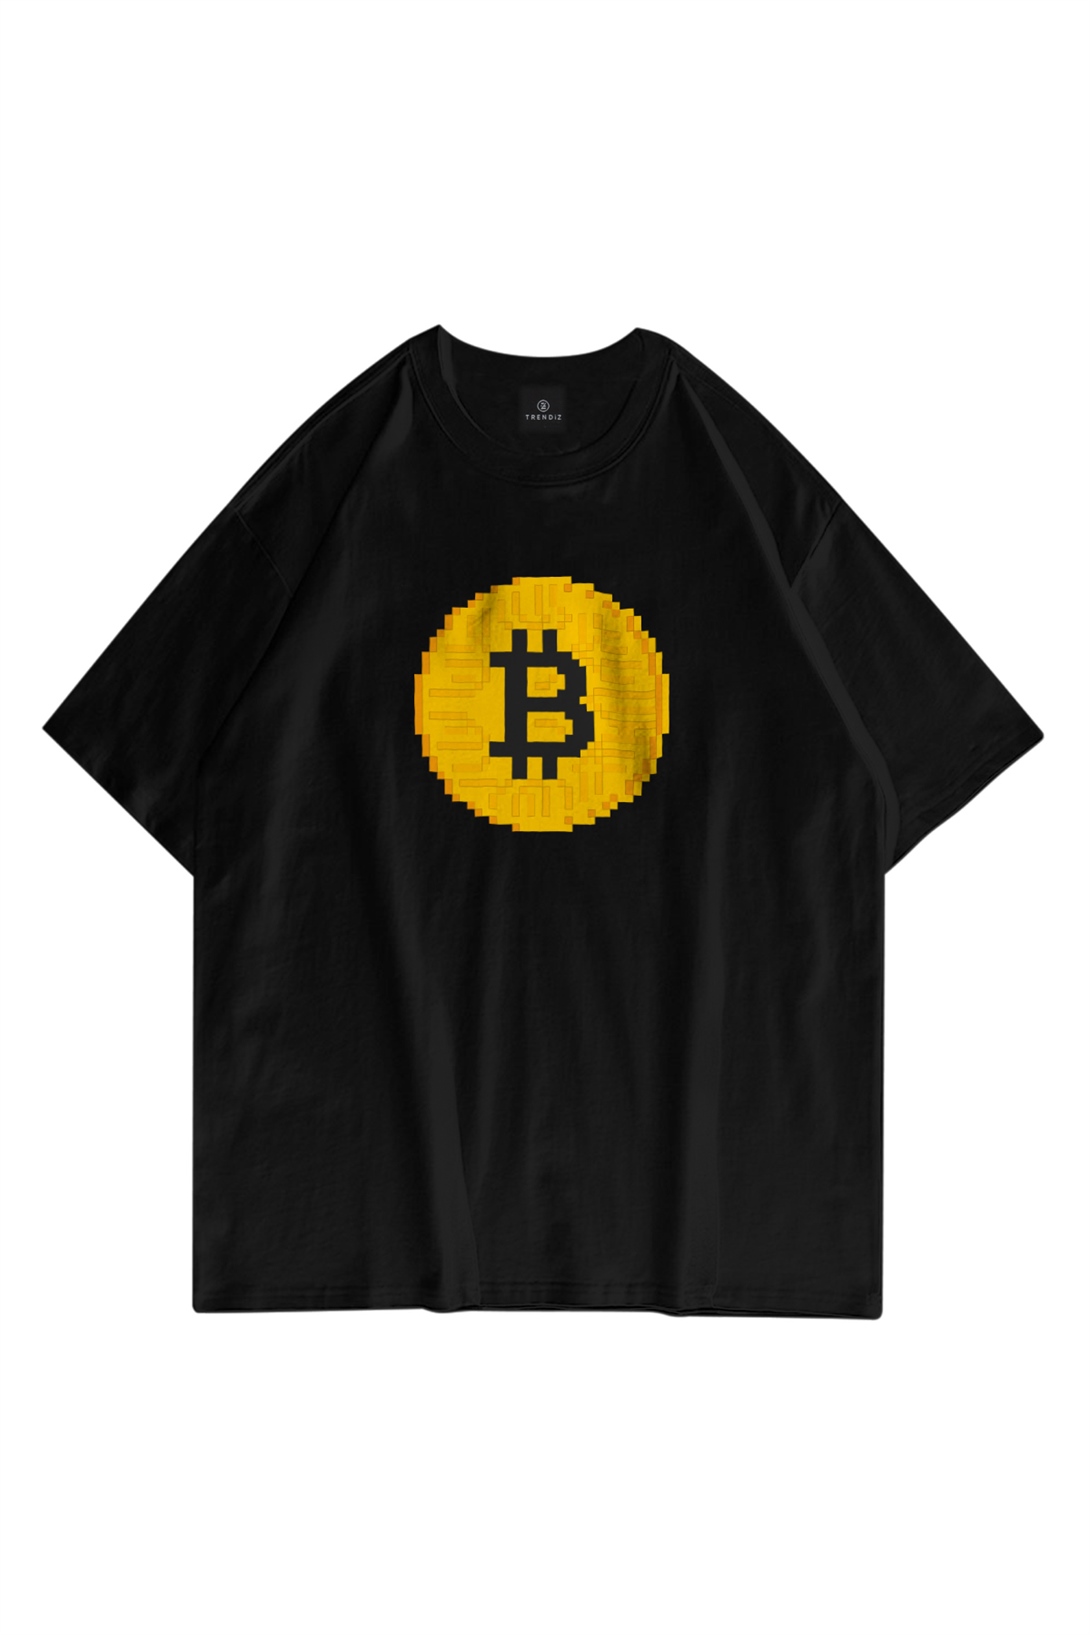 Trendiz Unisex Pixel Bitcoin Siyah Tshirt